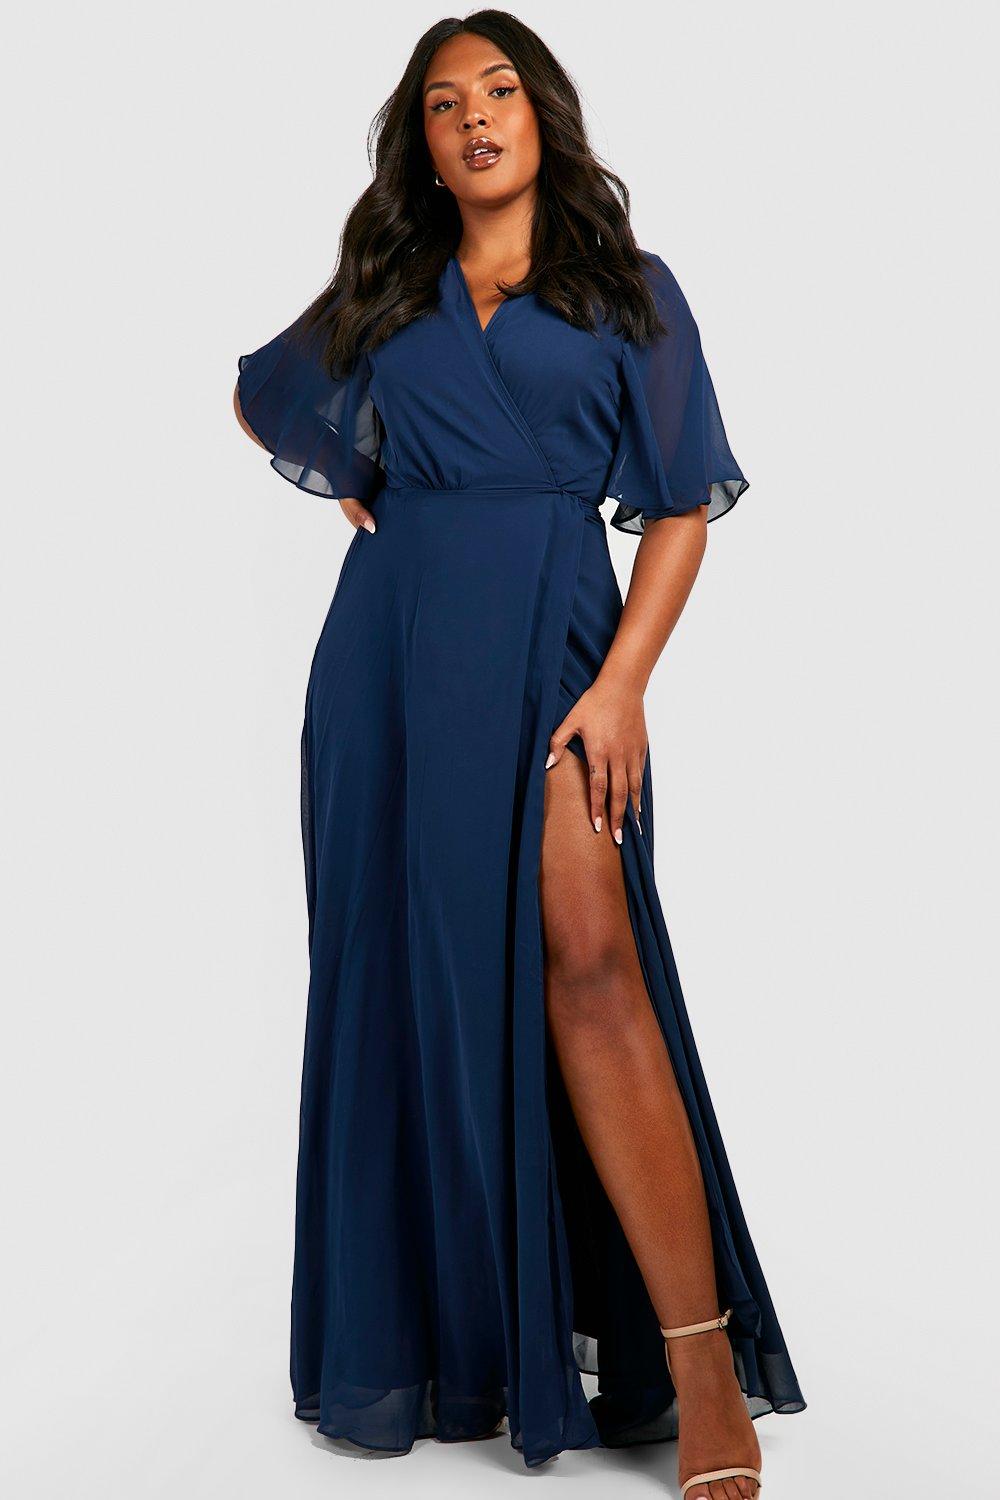 Dark blue wrap plus size dress